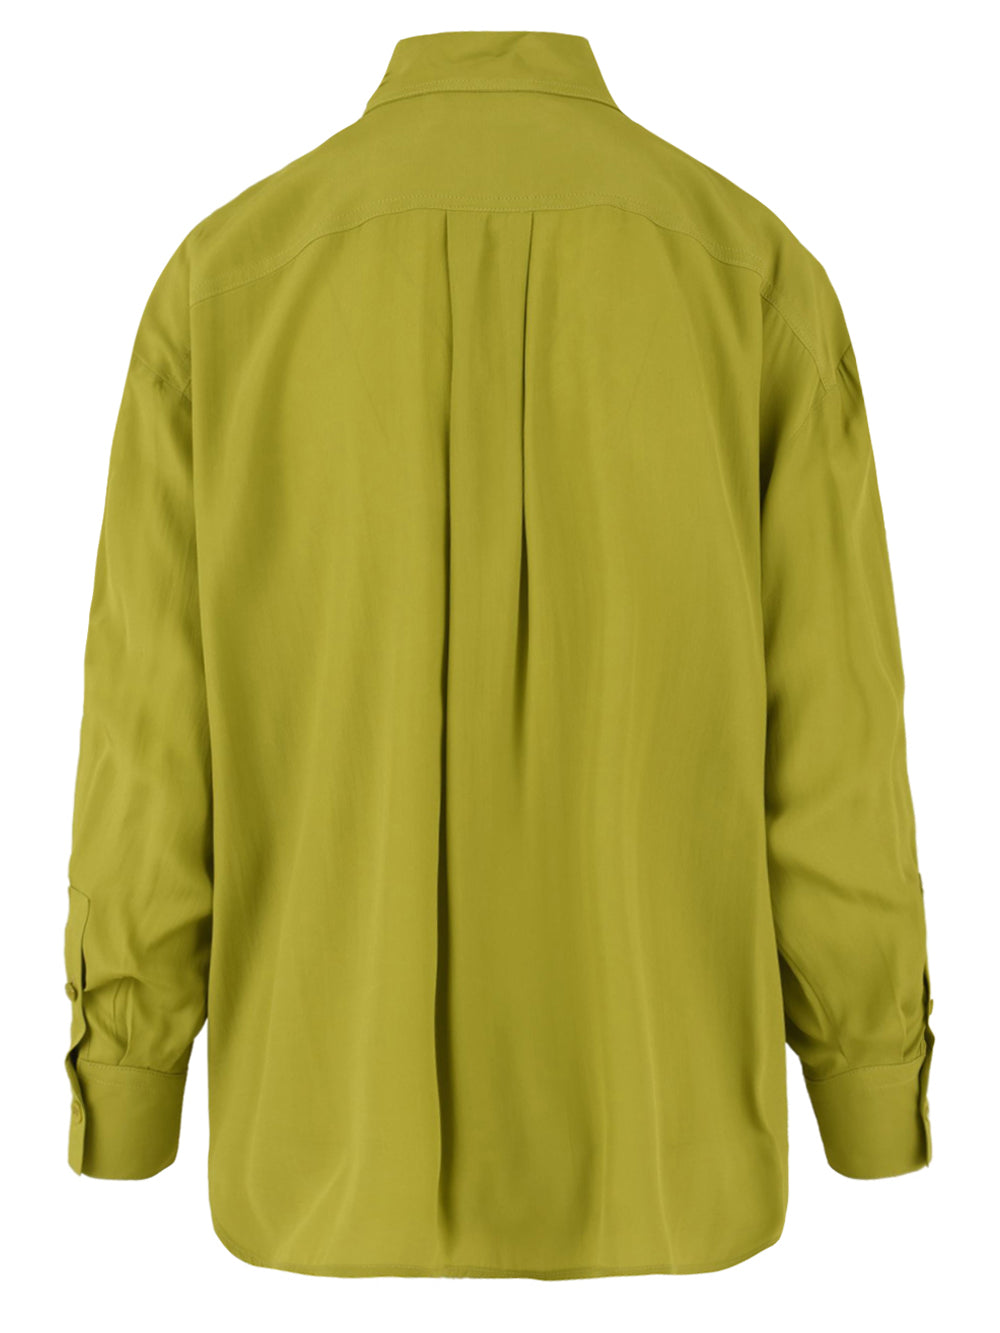 Retro camicia da donna firmata Solotre,colore cedro modello oversize.